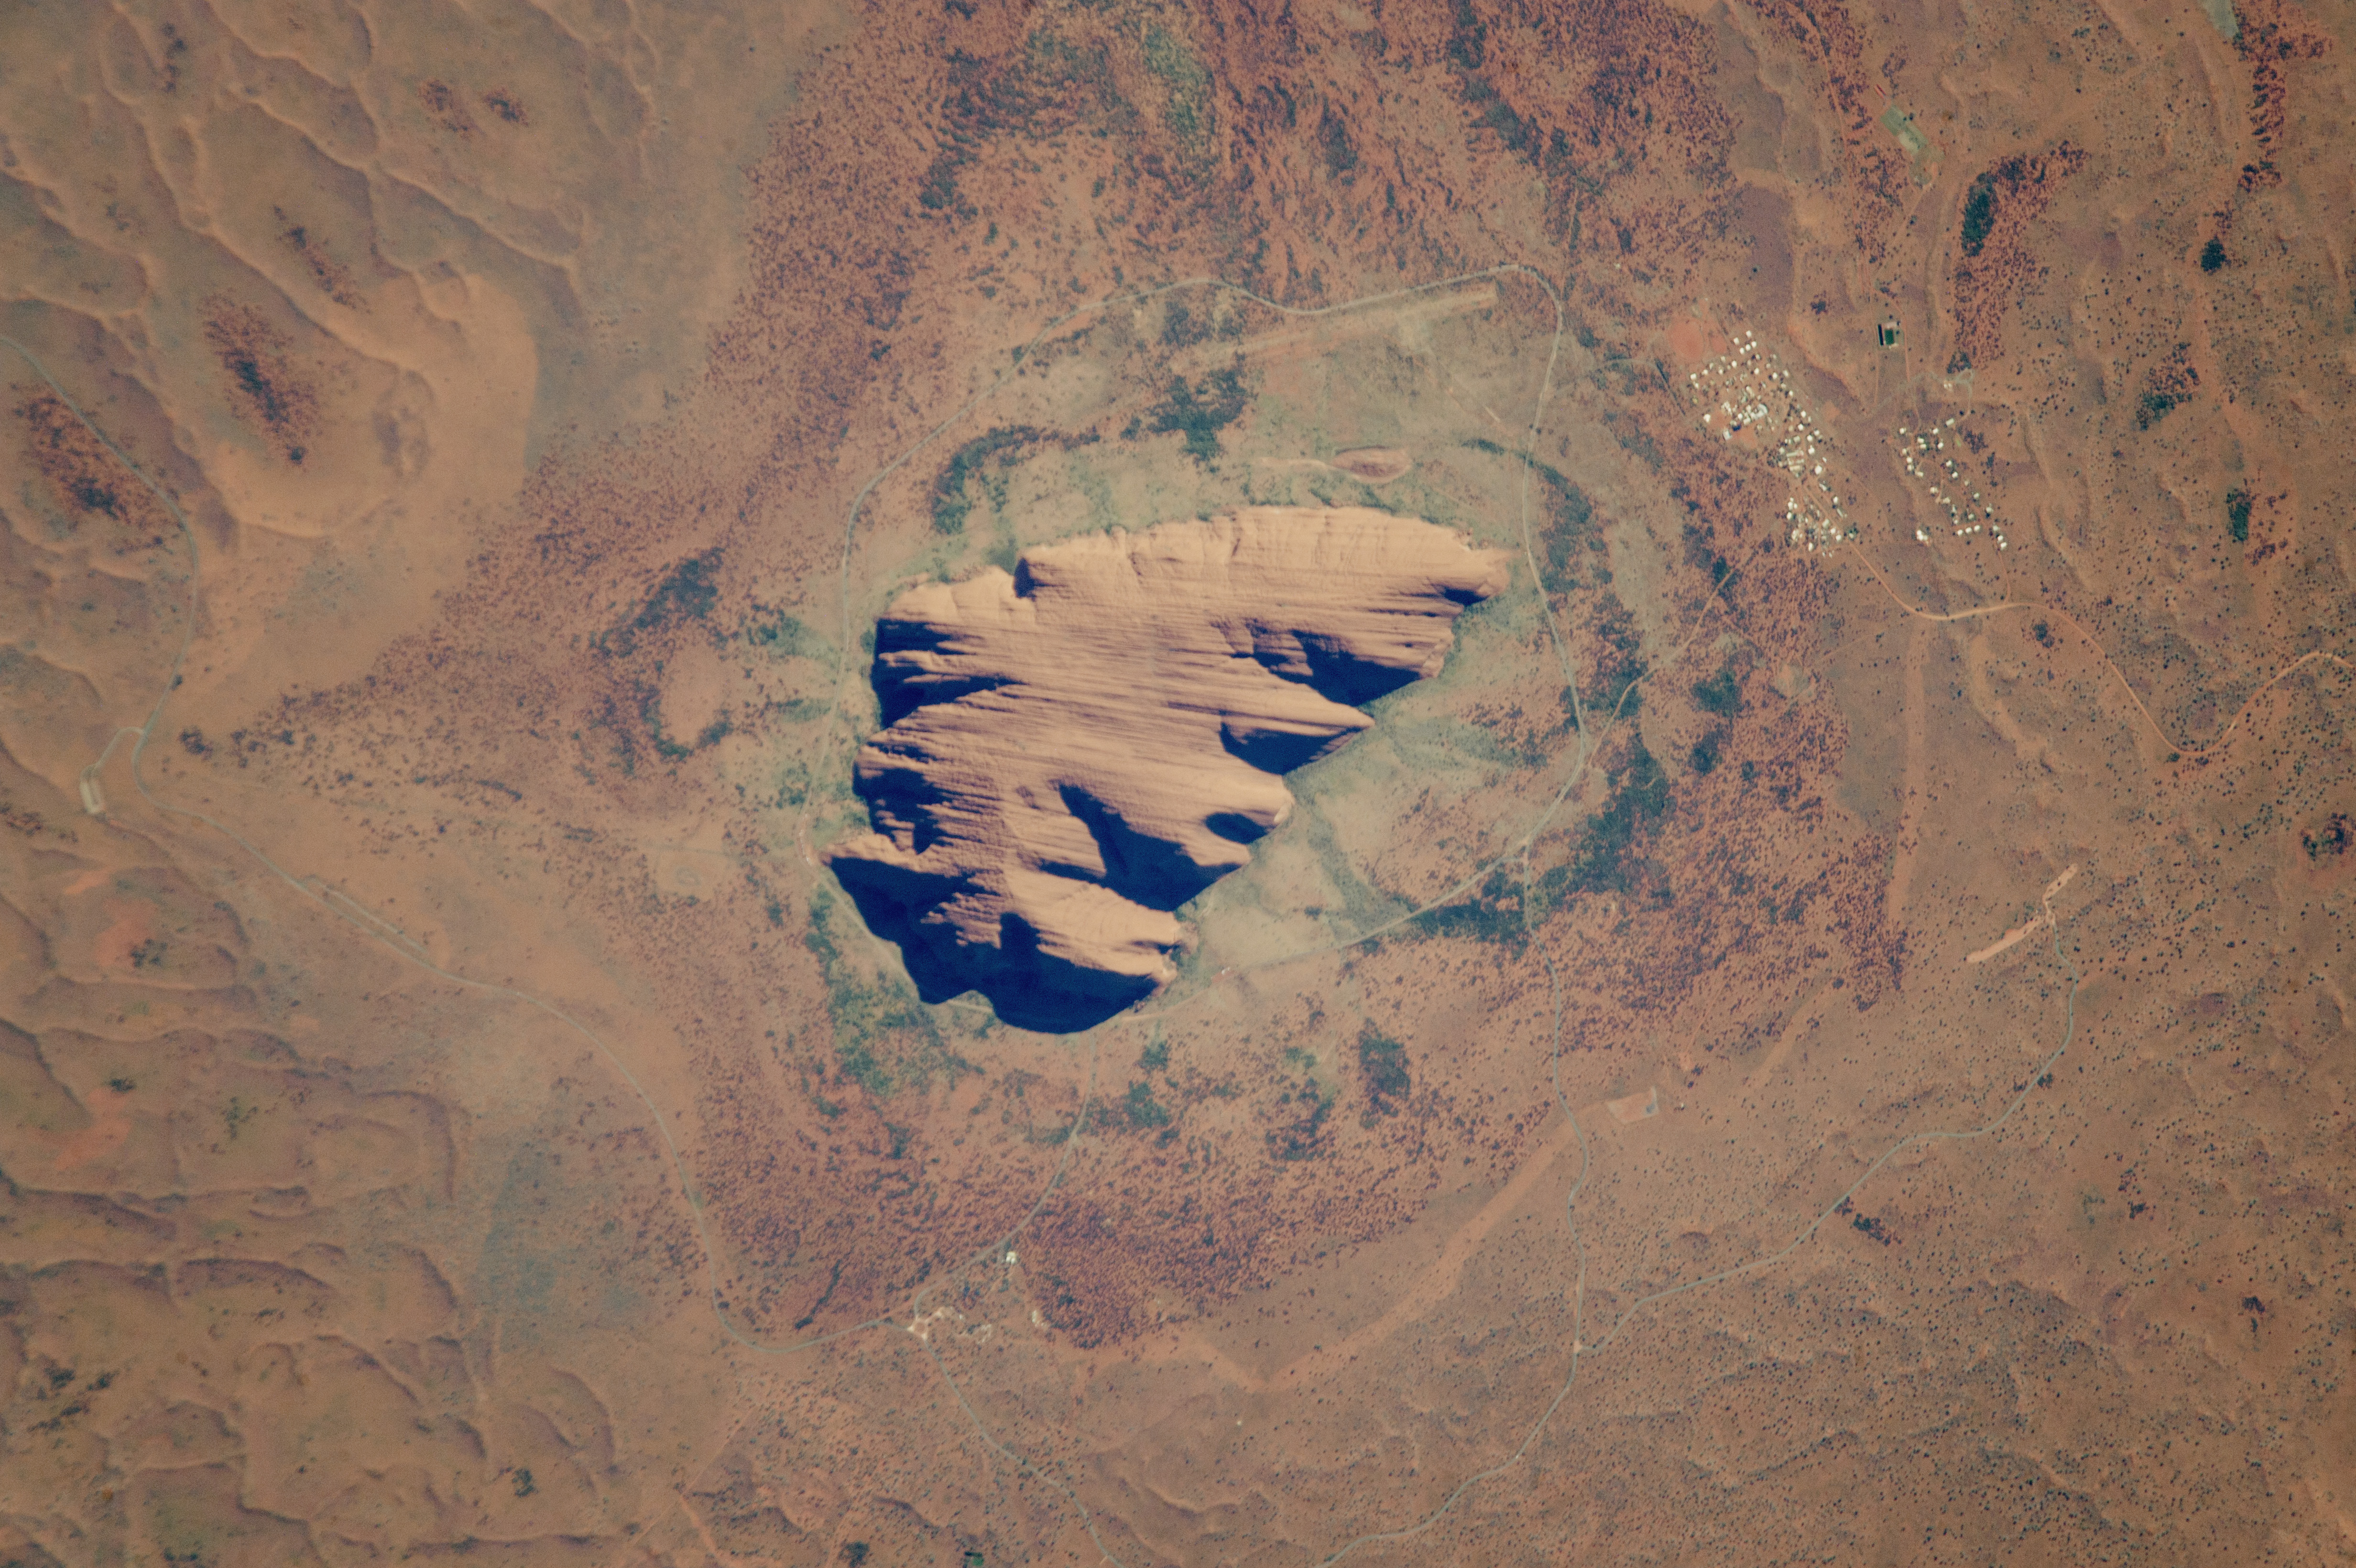 Le site d'Uluru a été classé au patrimoine mondial de l'Unesco en 1994 afin de préserver la culture aborigène. © Nasa